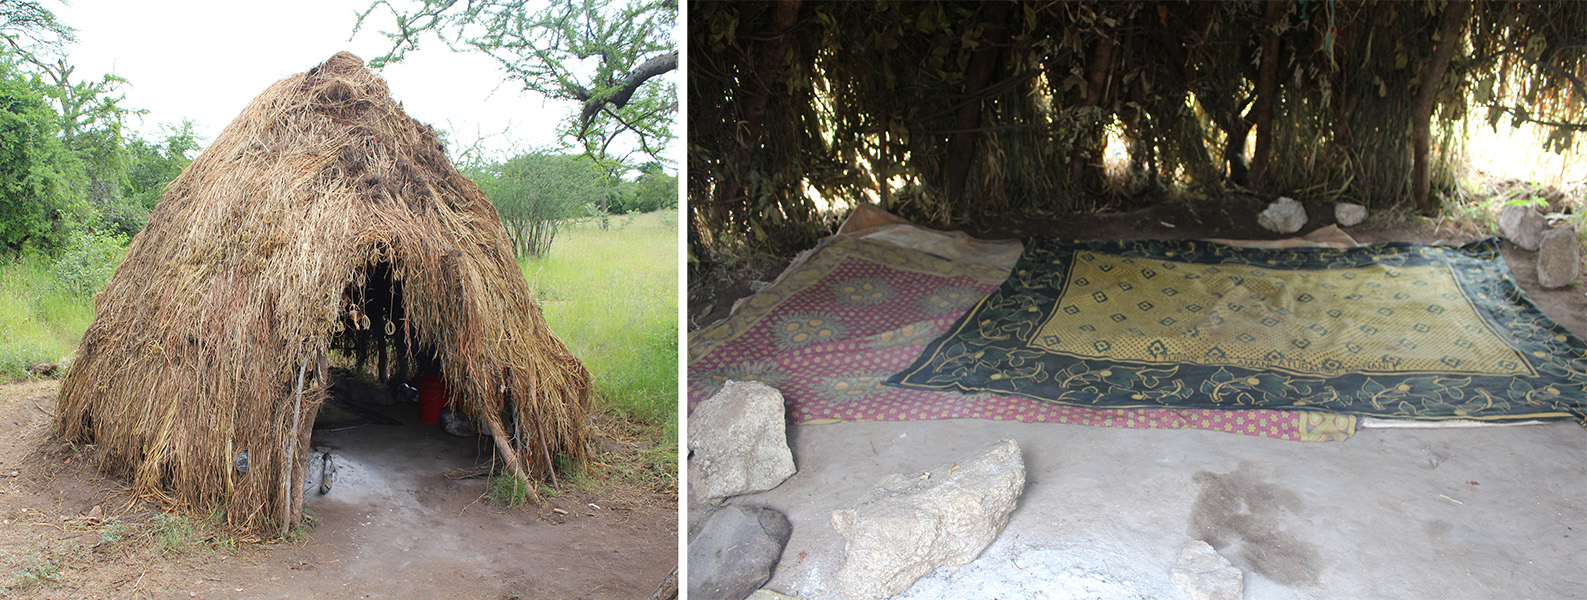 Una foto muestra una cabaña de paja con una puerta abierta; la otra muestra unas alfombras en el suelo bajo la sombra de un gran árbol.